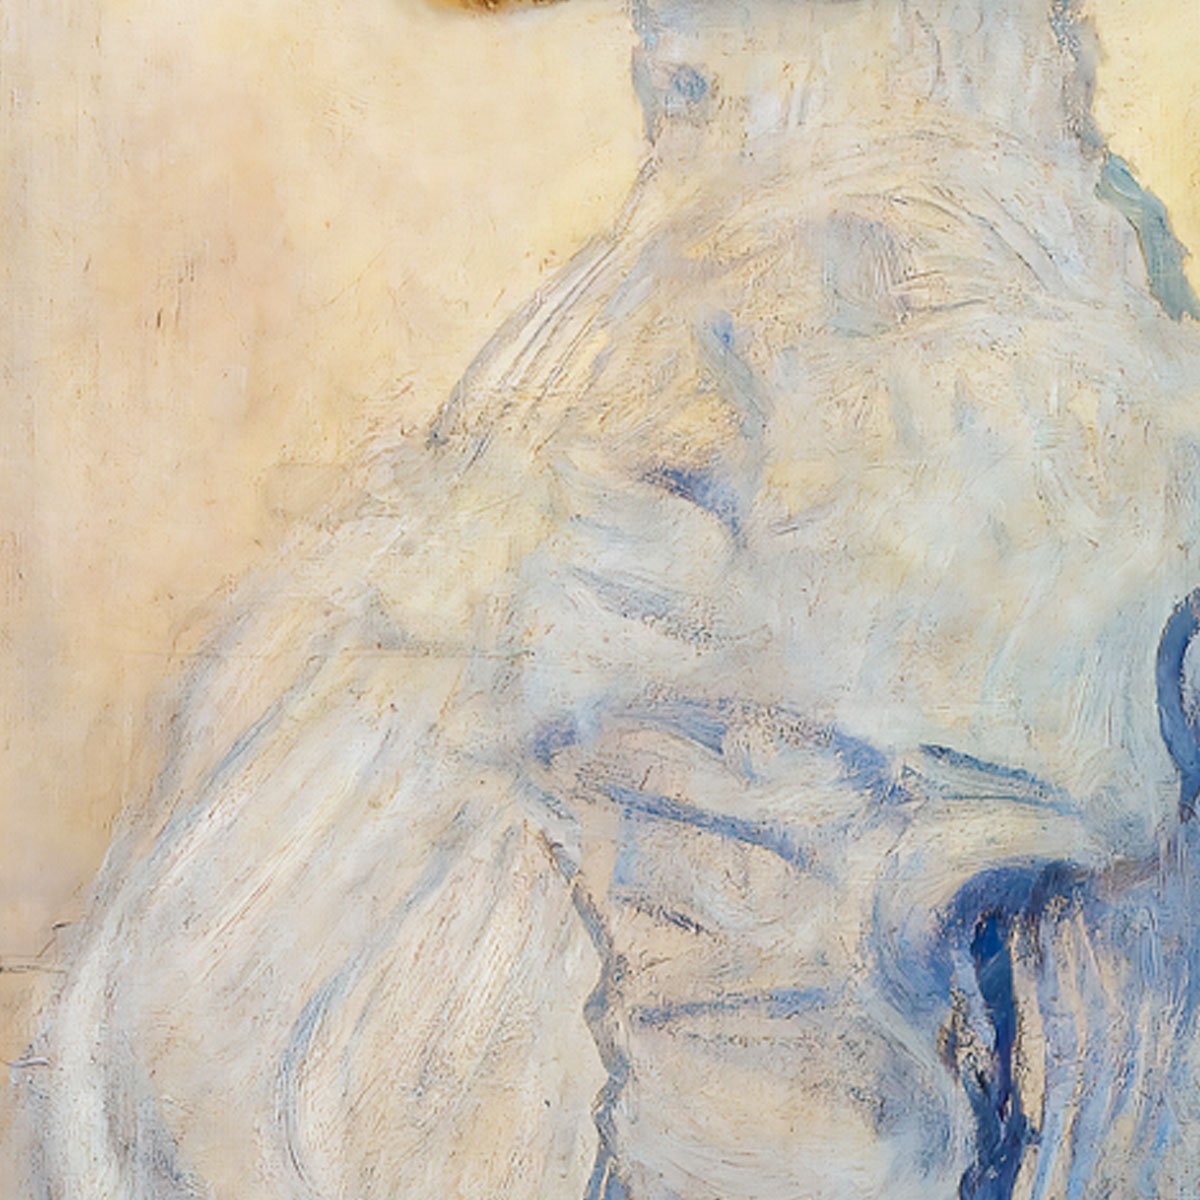 Portrait of Helene Klimt by Gustav Klimt